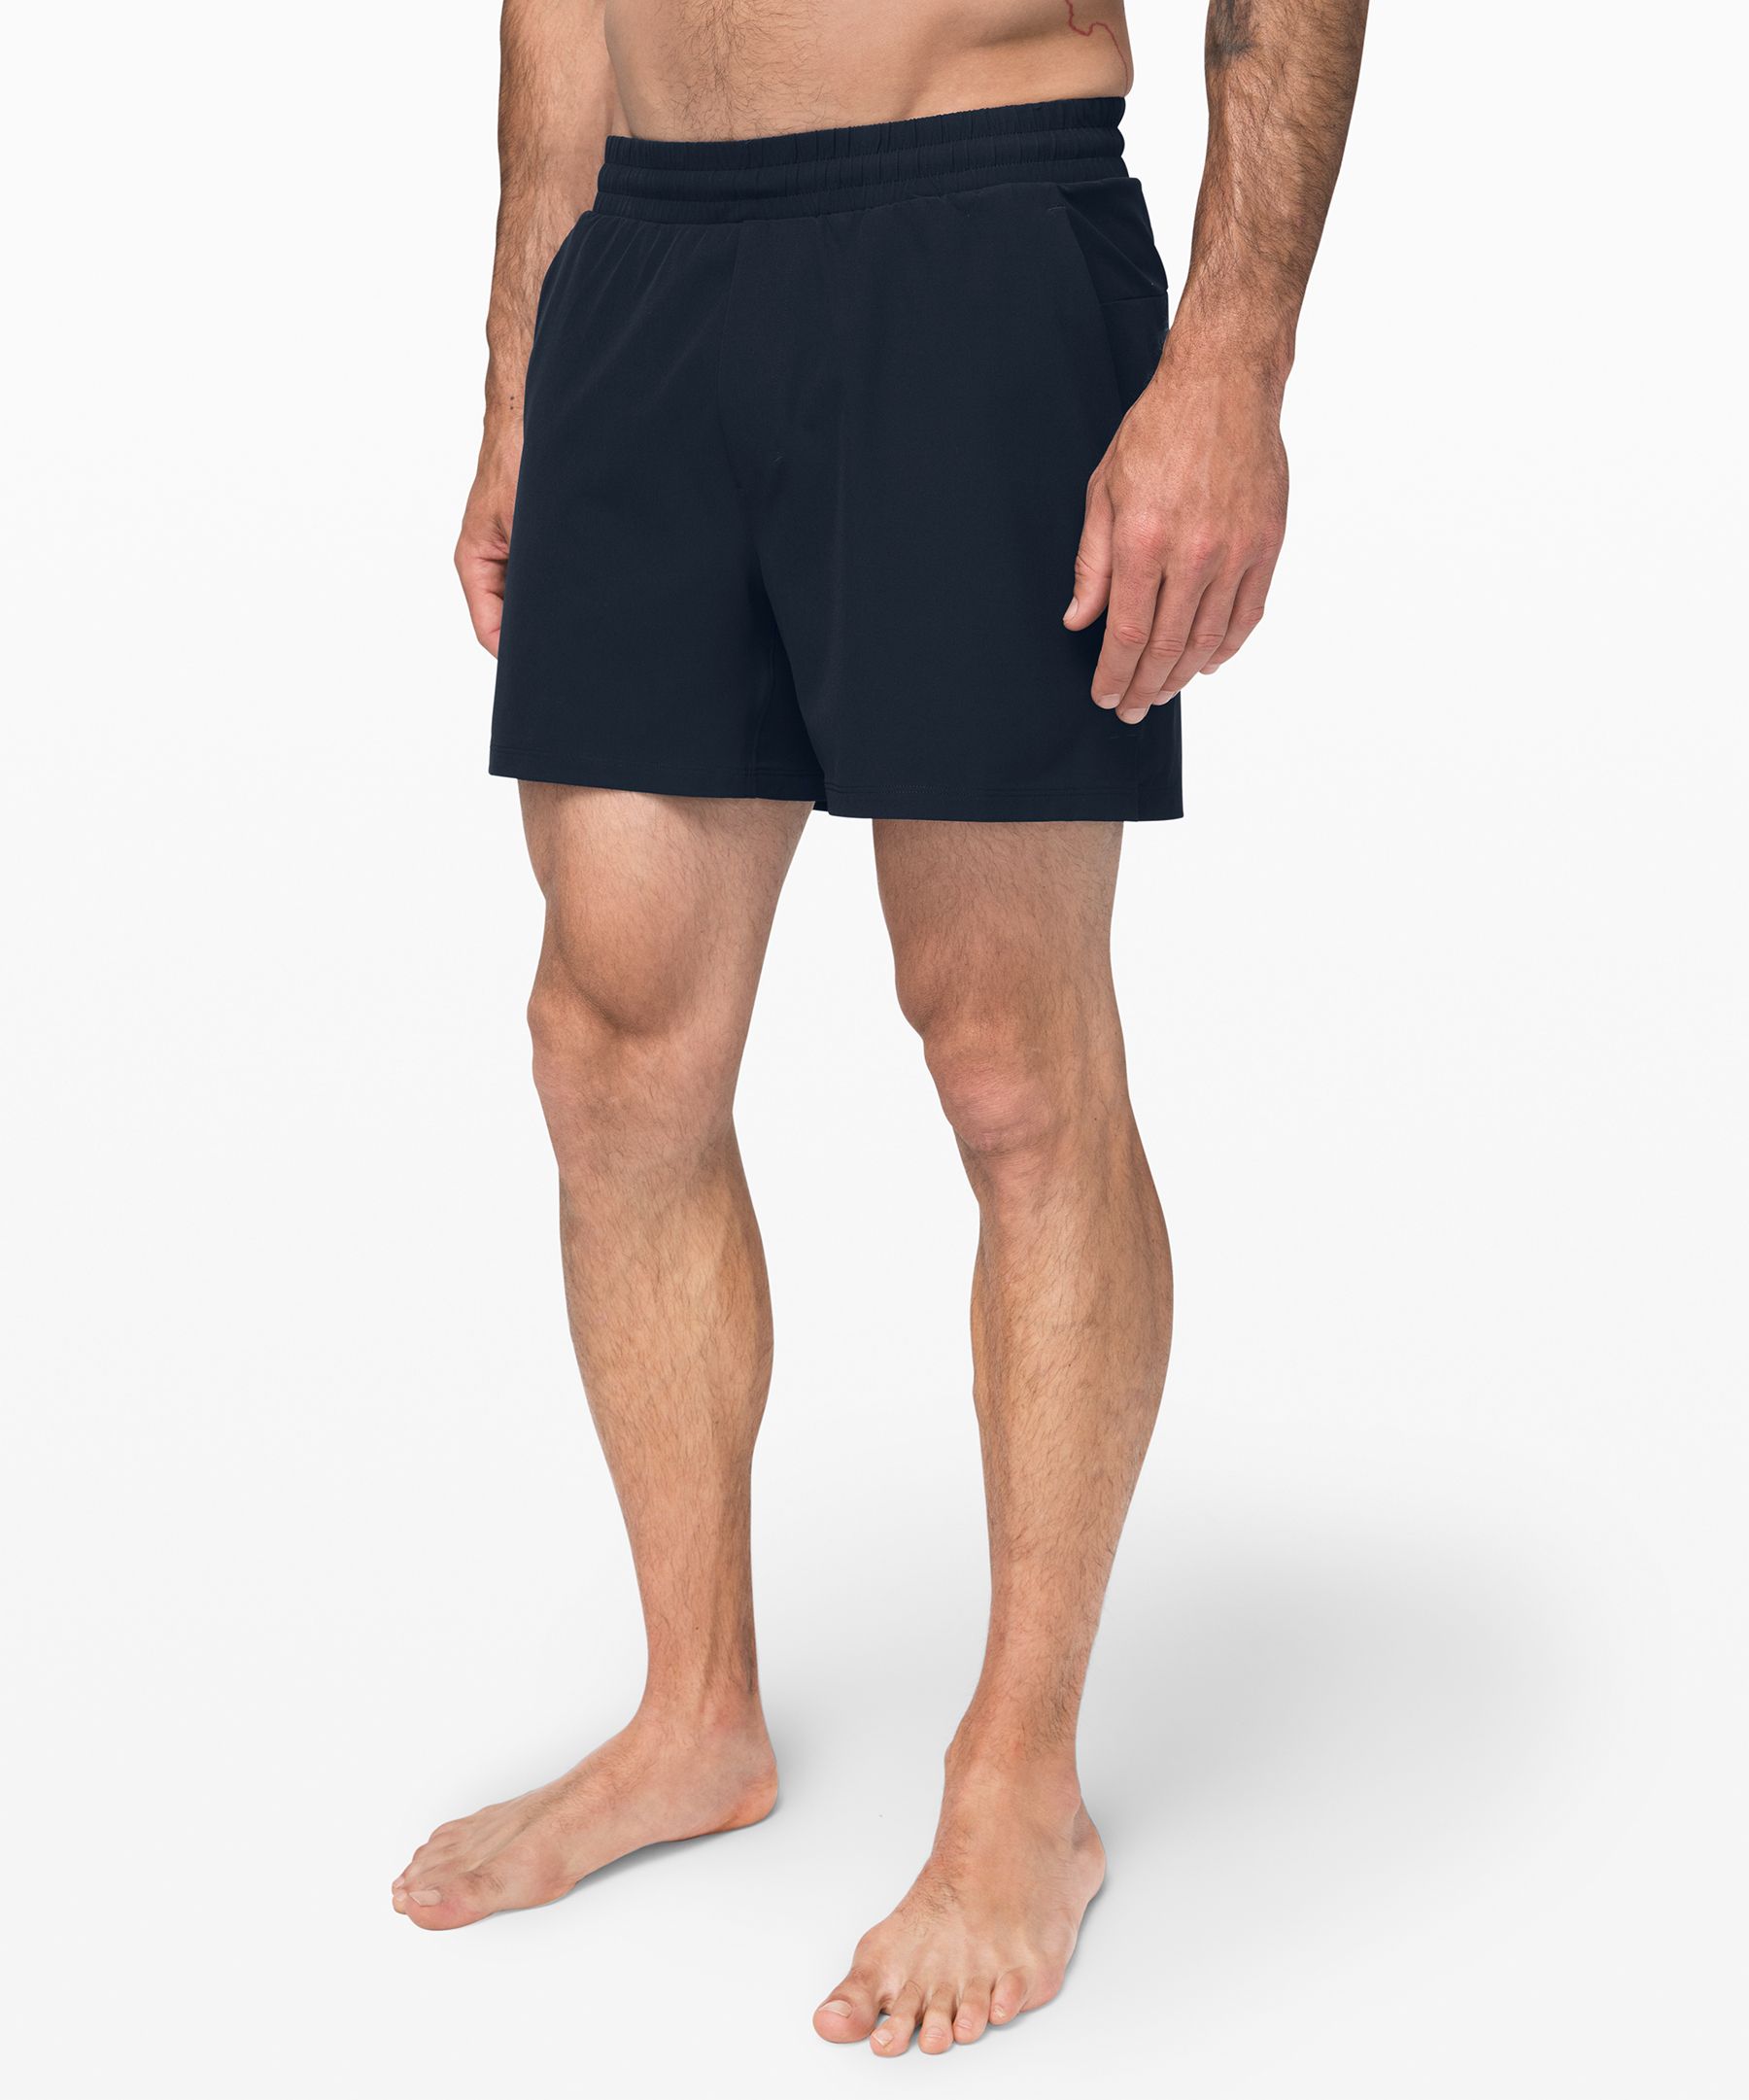 lulu lemon shorts for men